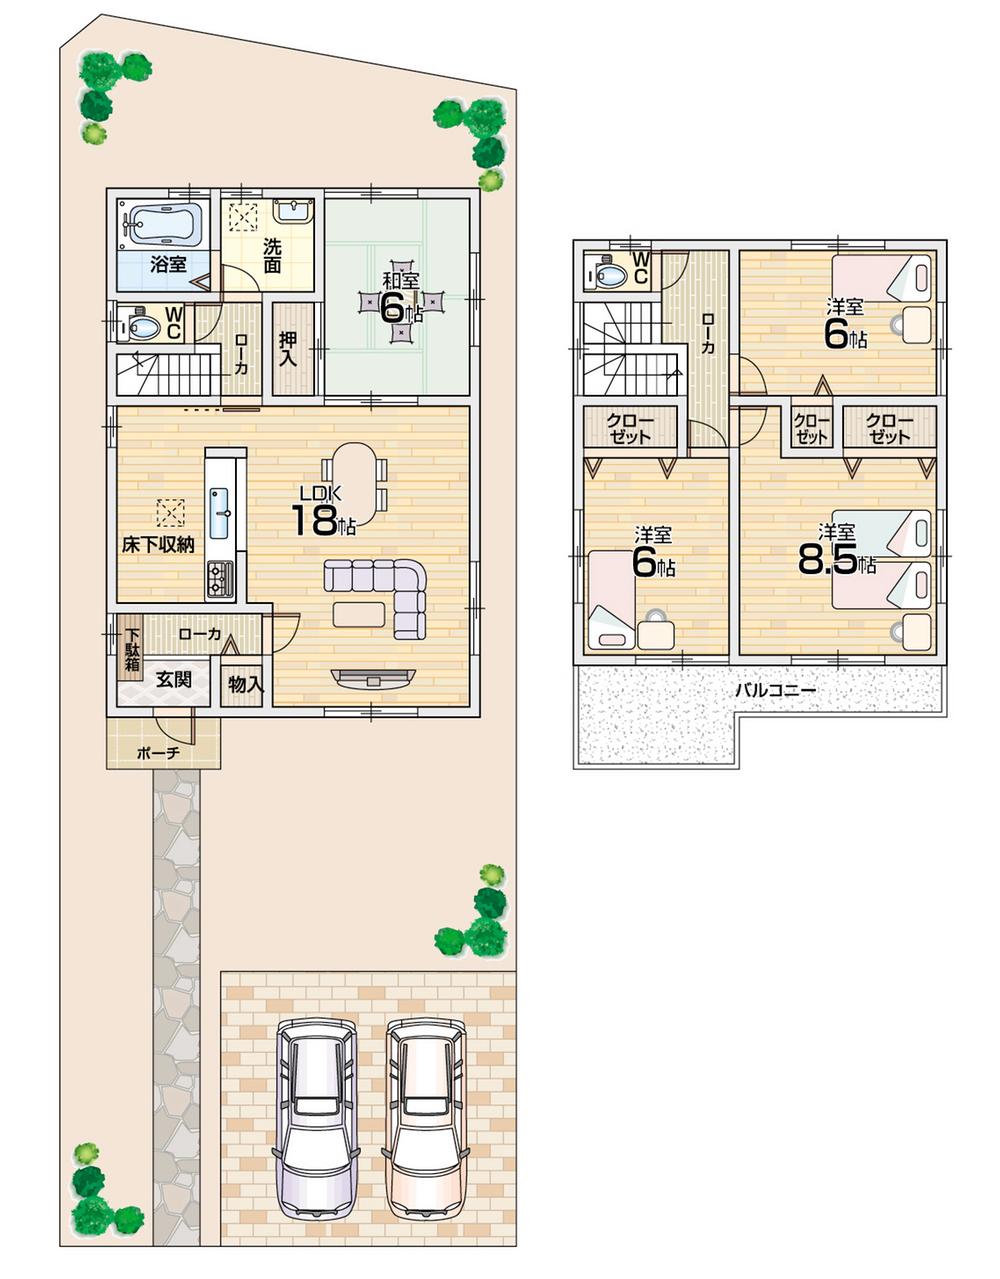 Floor plan. 24,800,000 yen, 4LDK + S (storeroom), Land area 202.07 sq m , Building area 105.99 sq m floor plan All room 6 quires more, Walk-in closet with! 